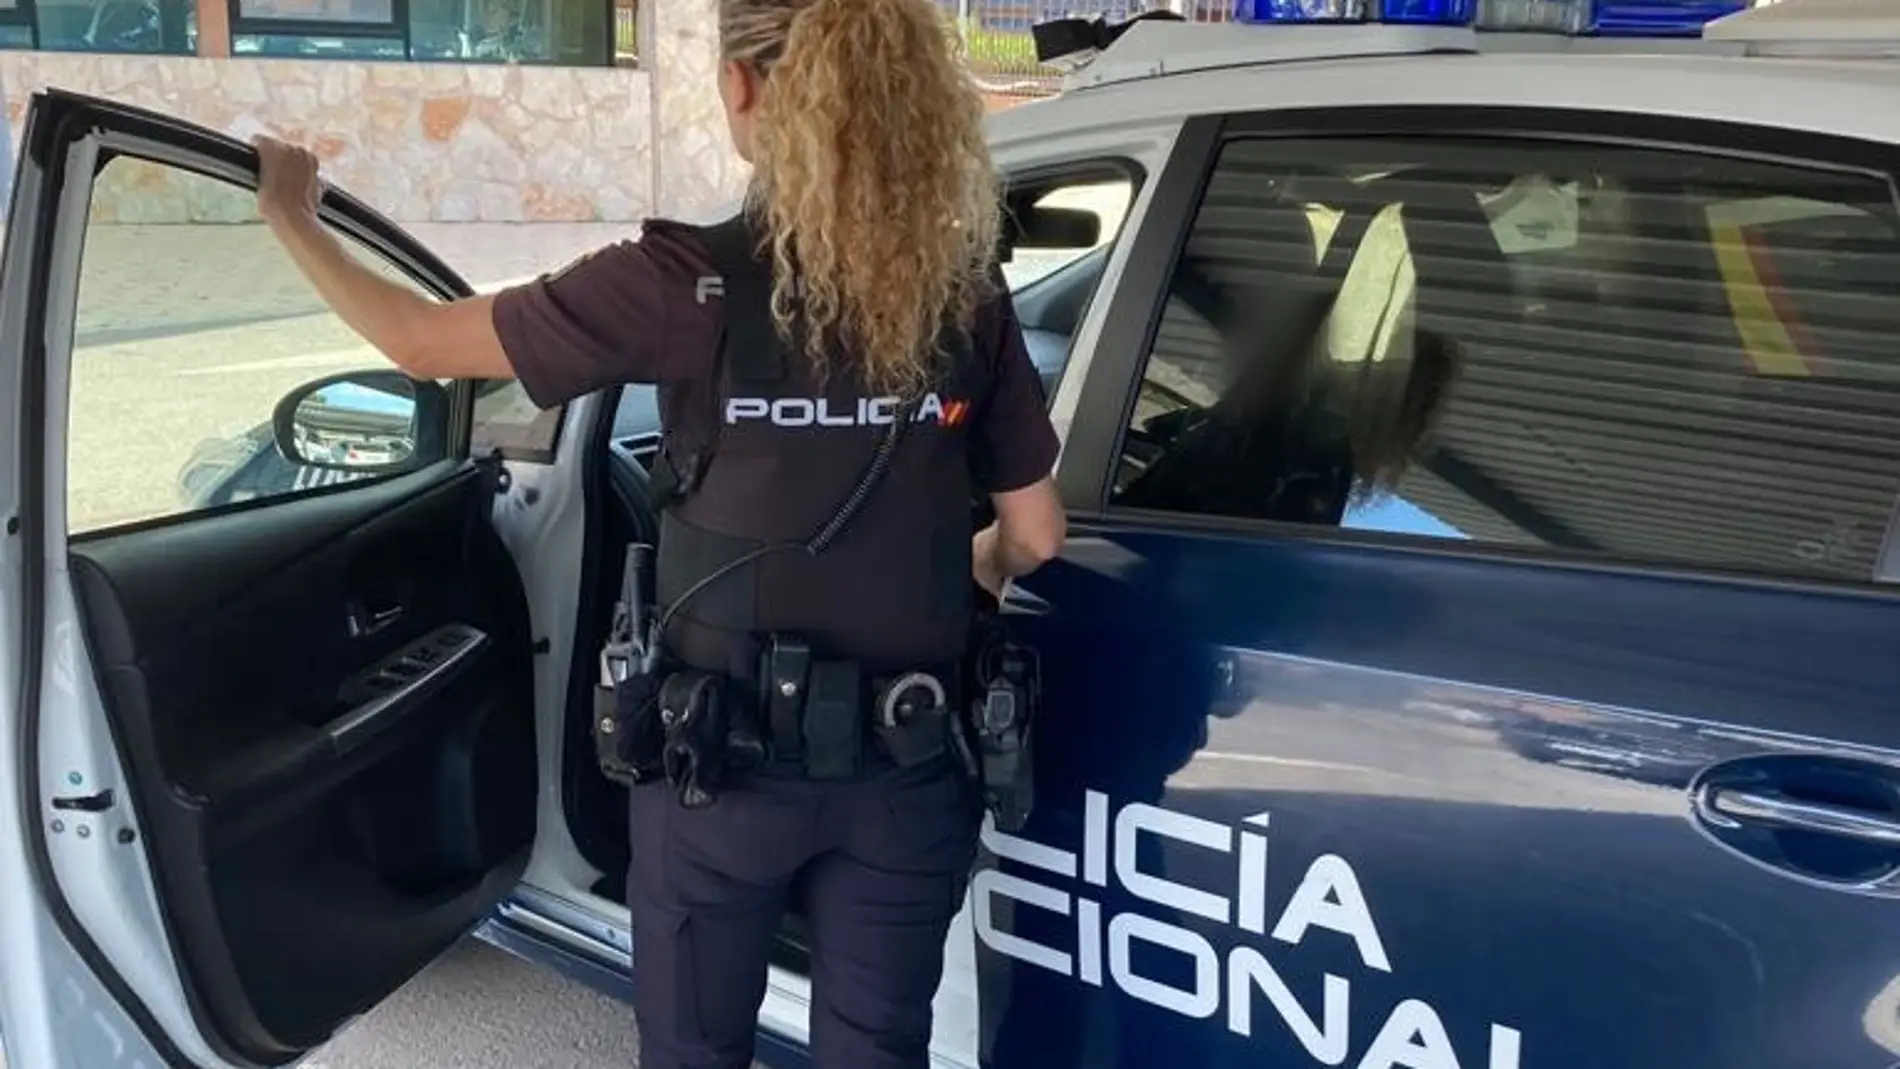 La Policía Nacional detiene en Ibiza a un hombre por robar en un establecimiento y agredir sexualmente a la dependienta